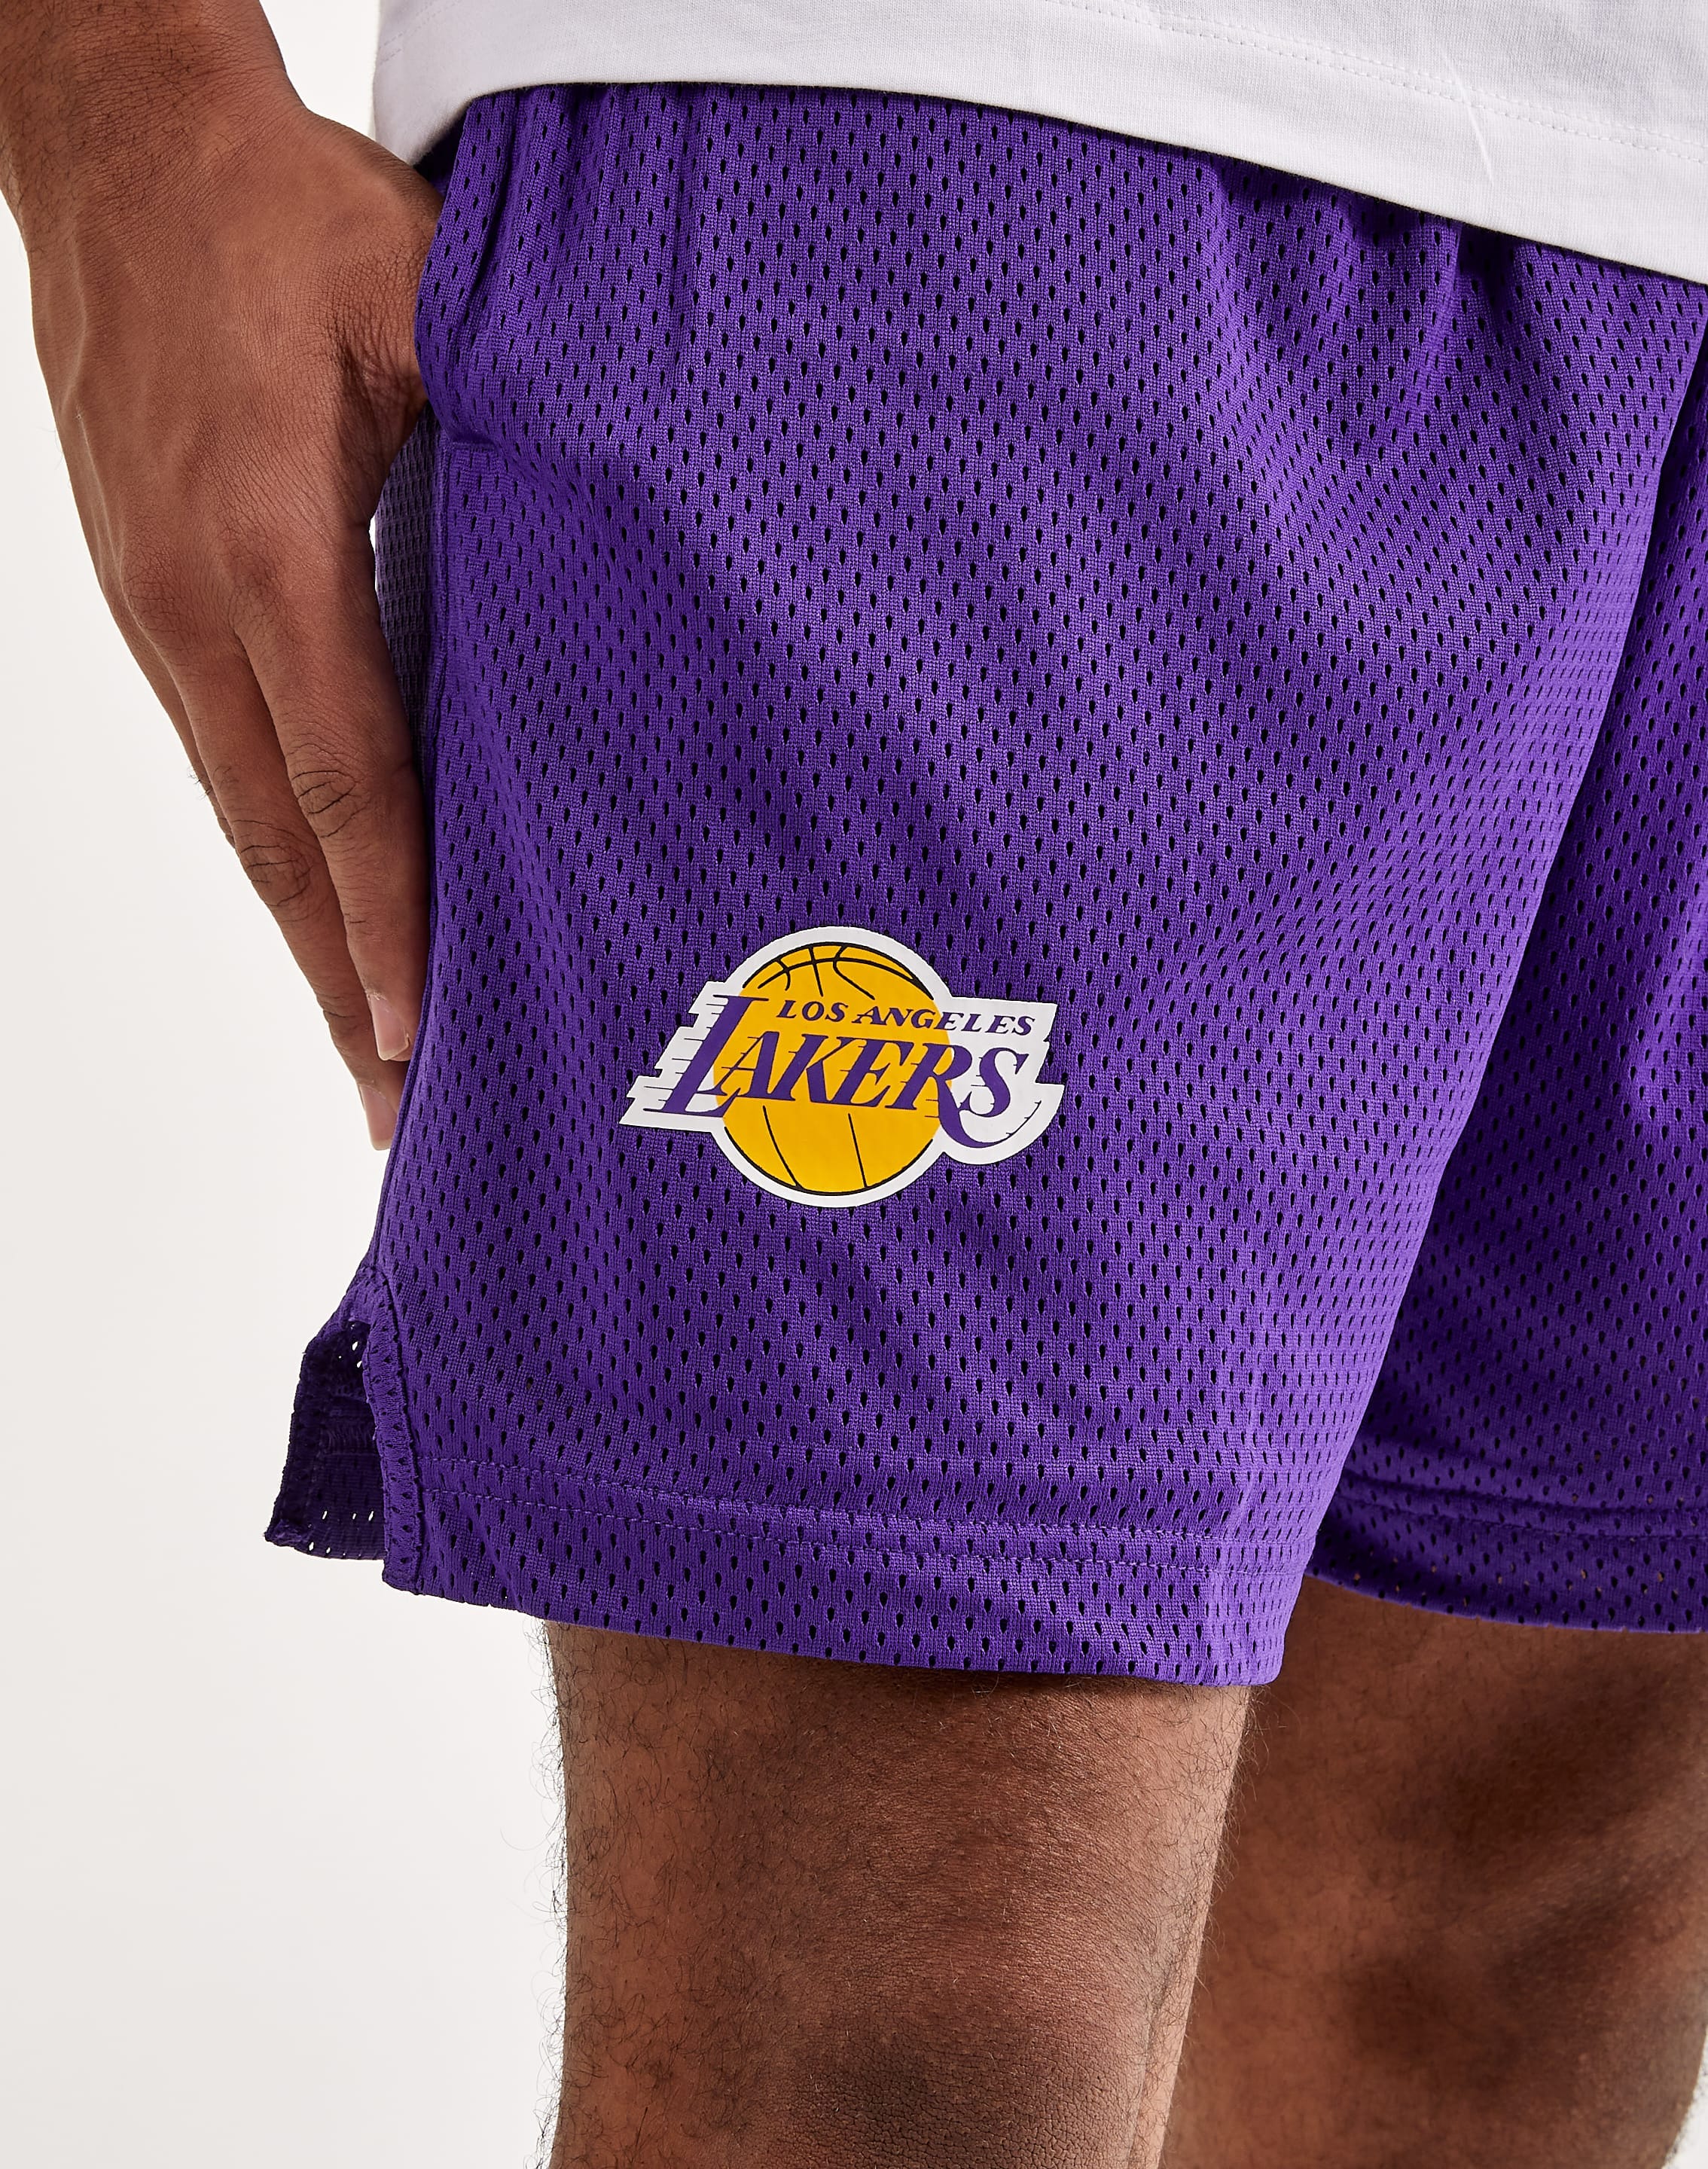 Nike Lakers Tee – DTLR